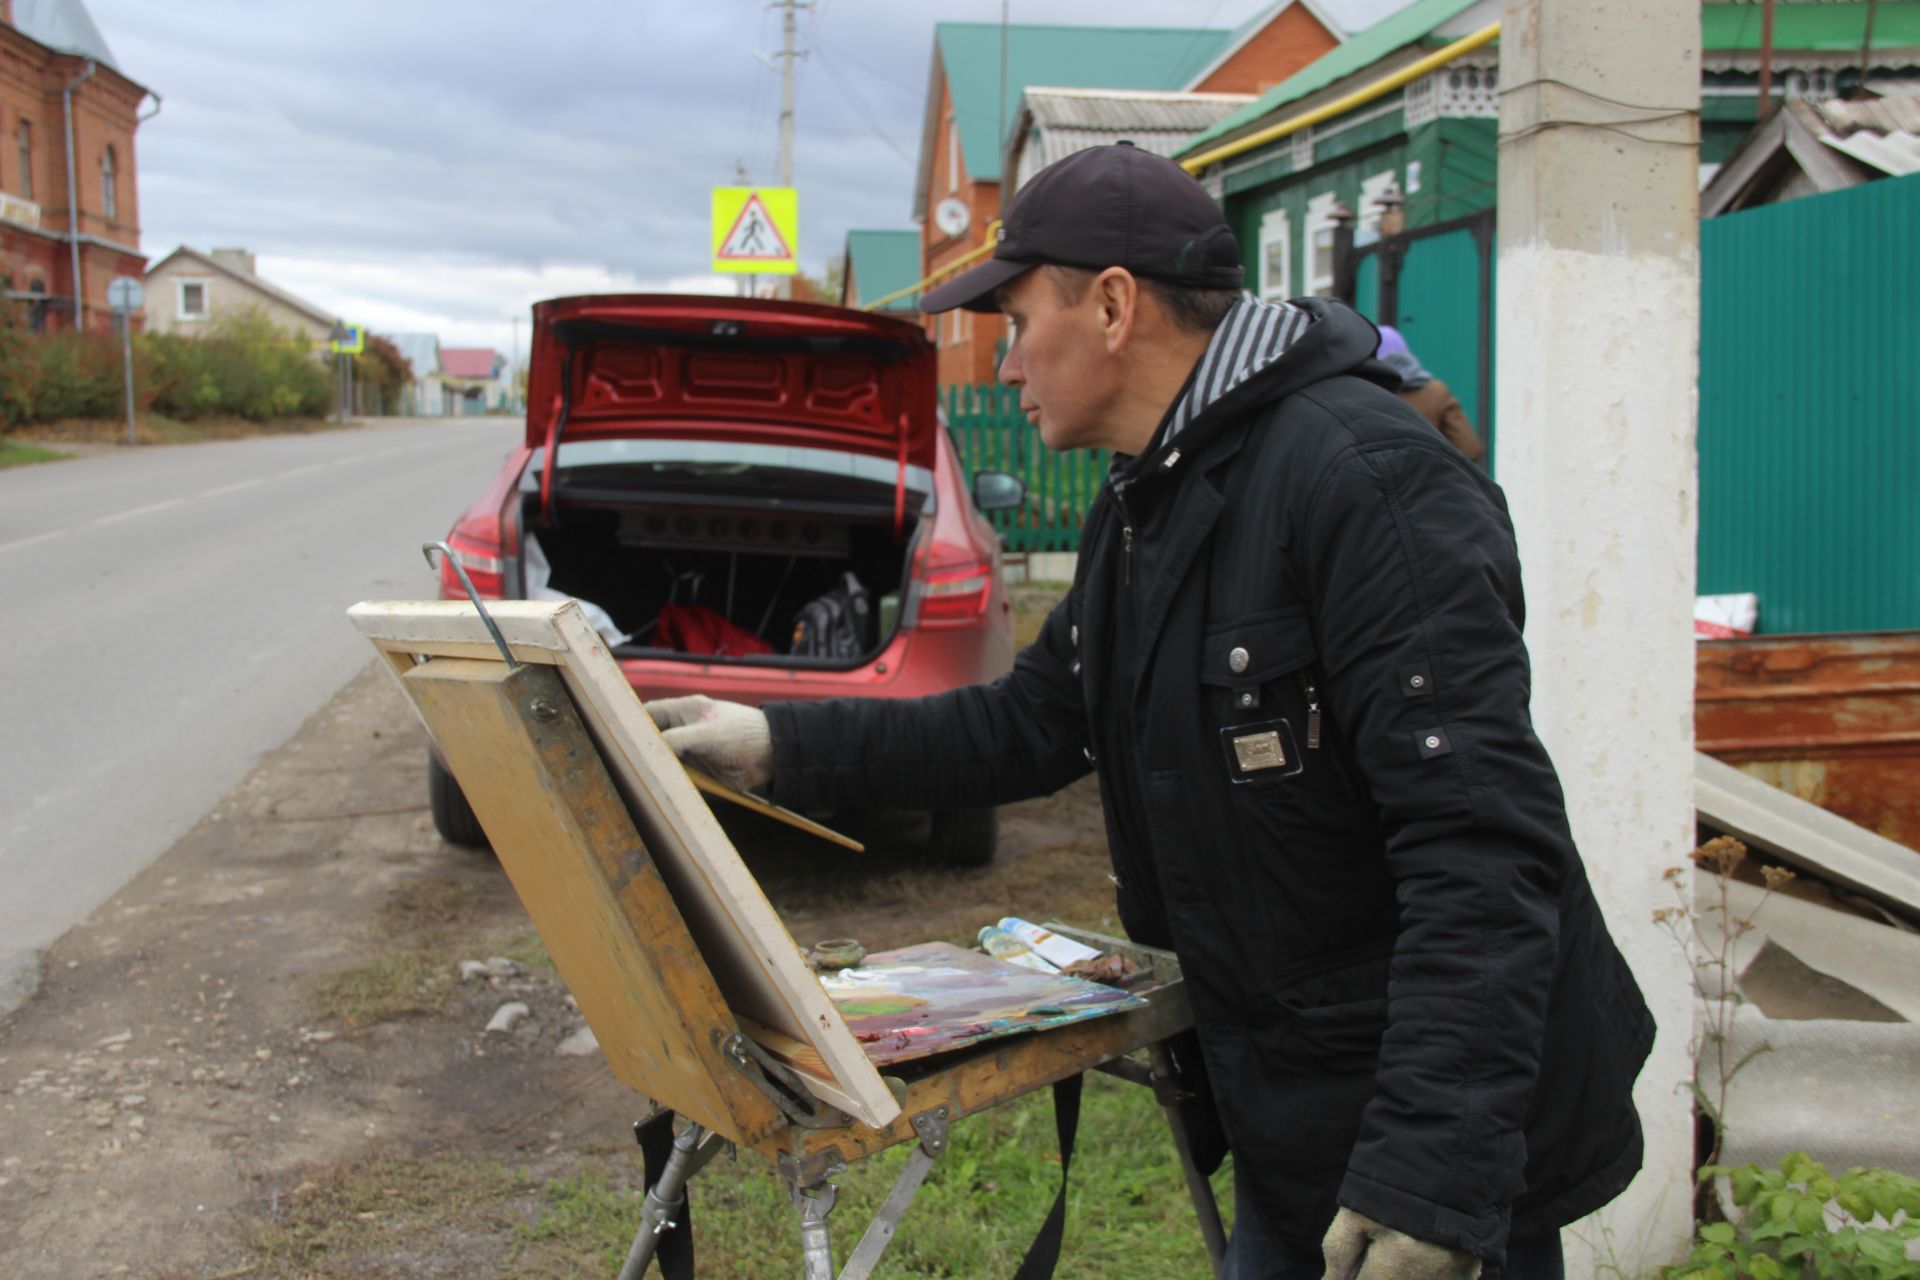 На улицах Буинска появились художники с мольбертами. Что они рисуют?